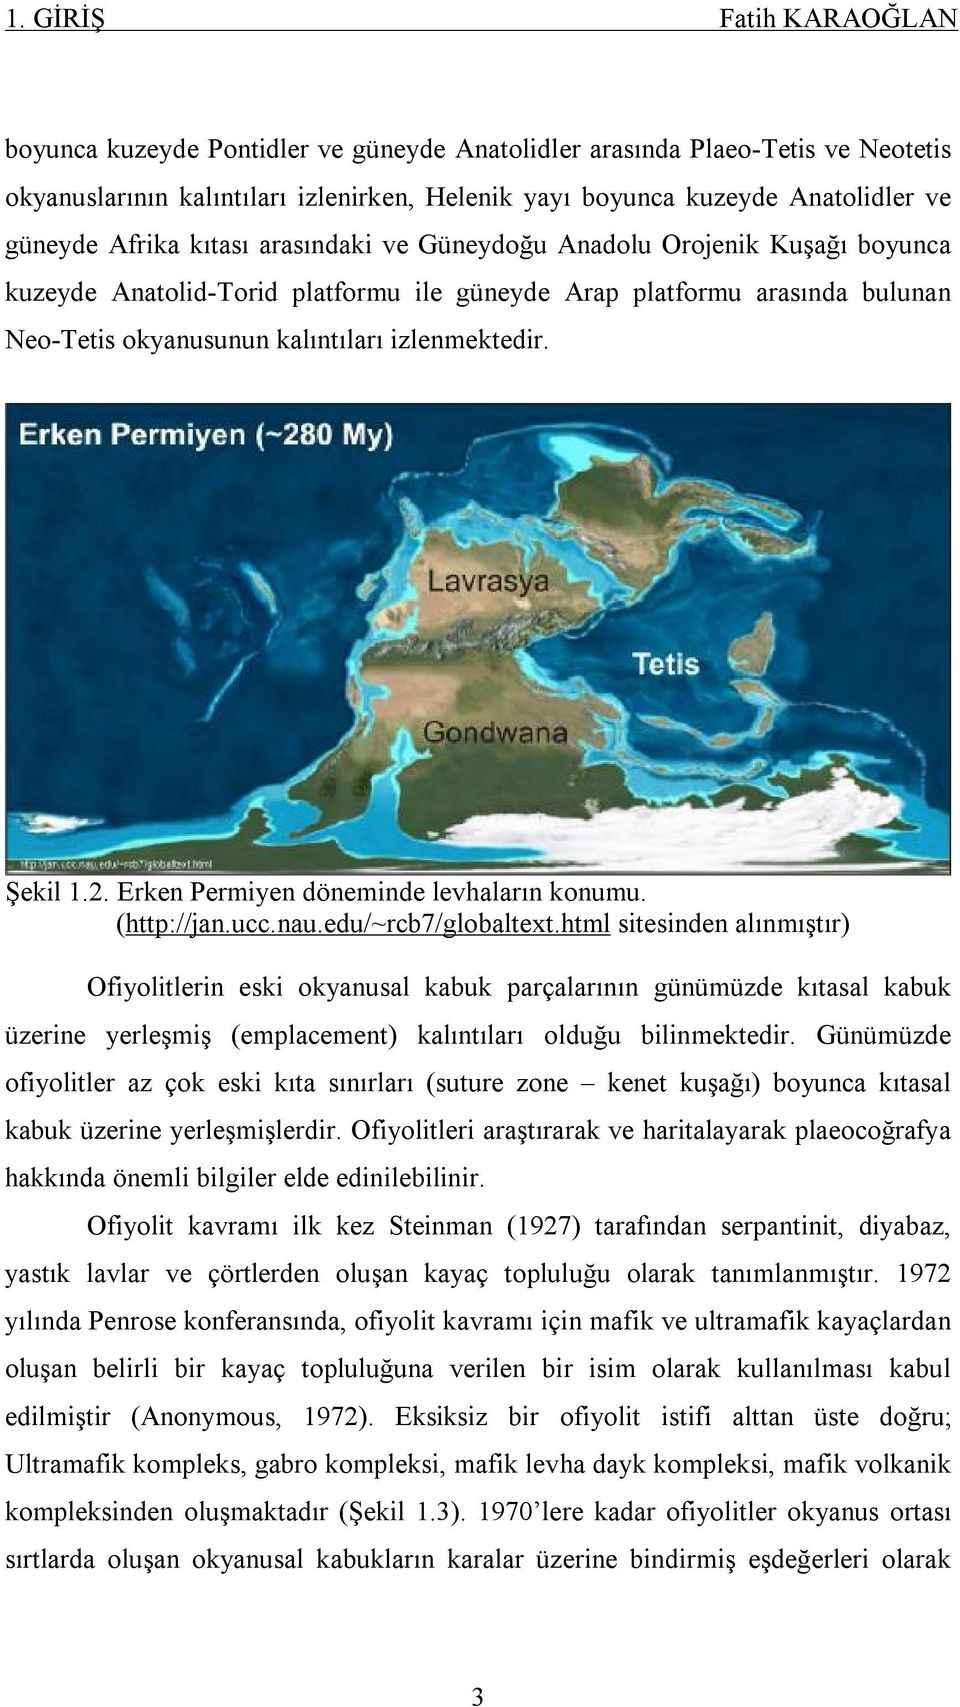 Şekil 1.2. Erken Permiyen döneminde levhaların konumu. (http://jan.ucc.nau.edu/~rcb7/globaltext.